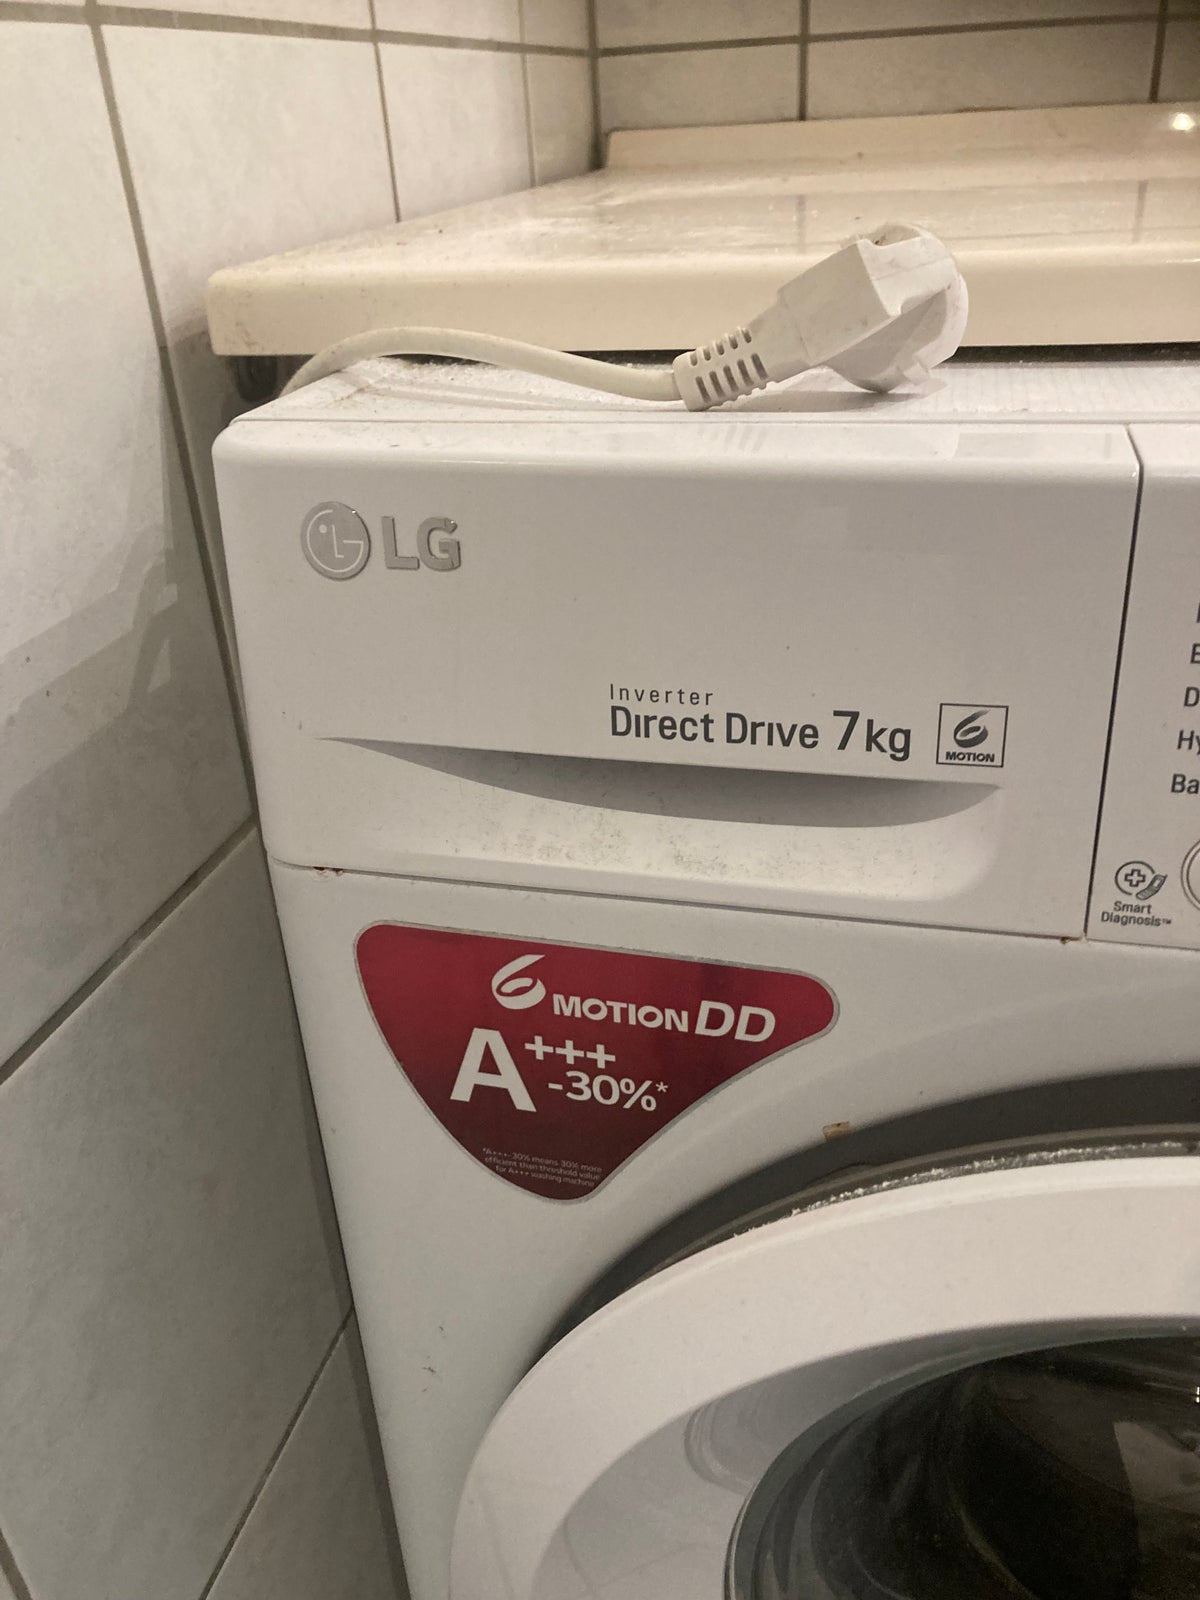 LG vaskemaskine, Inverter direct drive 7kg, frontbetjent